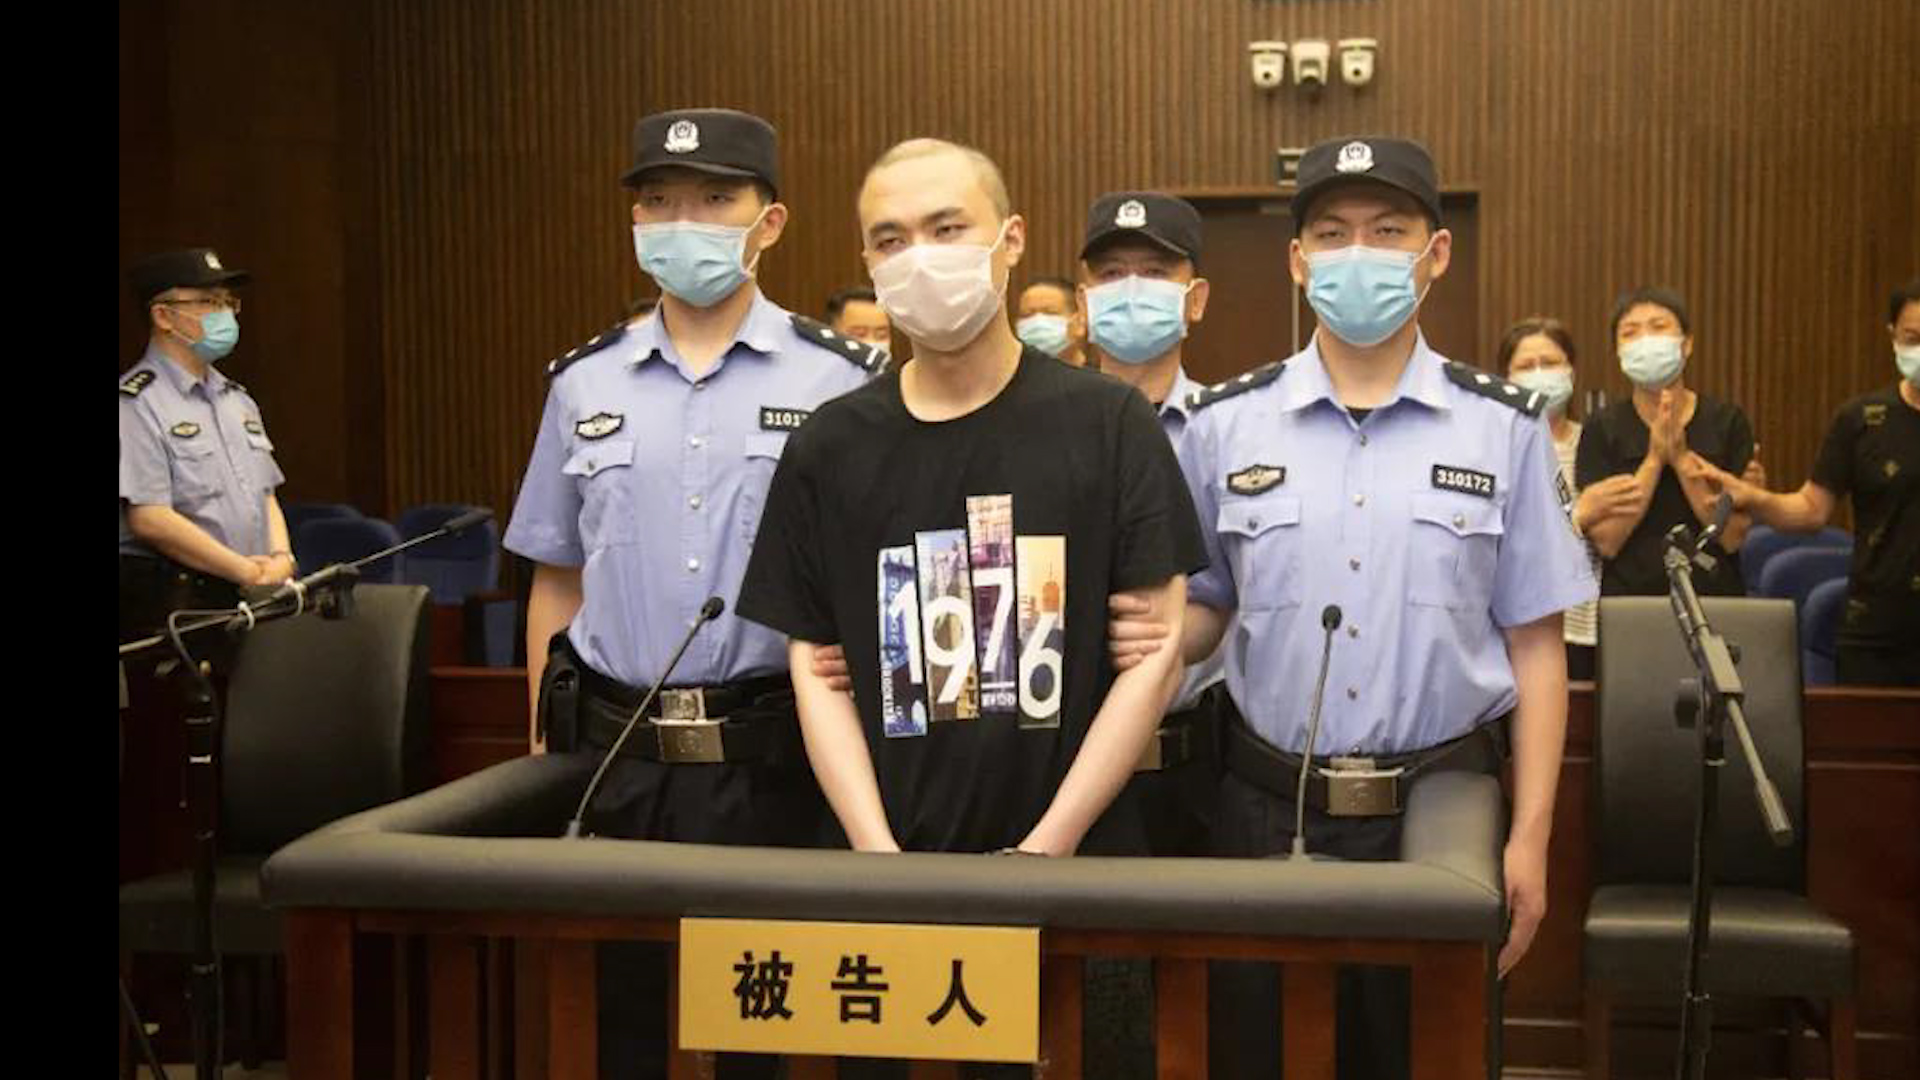 死刑执行视频 记录_刘汉死刑执行车队视频_近2年执行死刑的视频